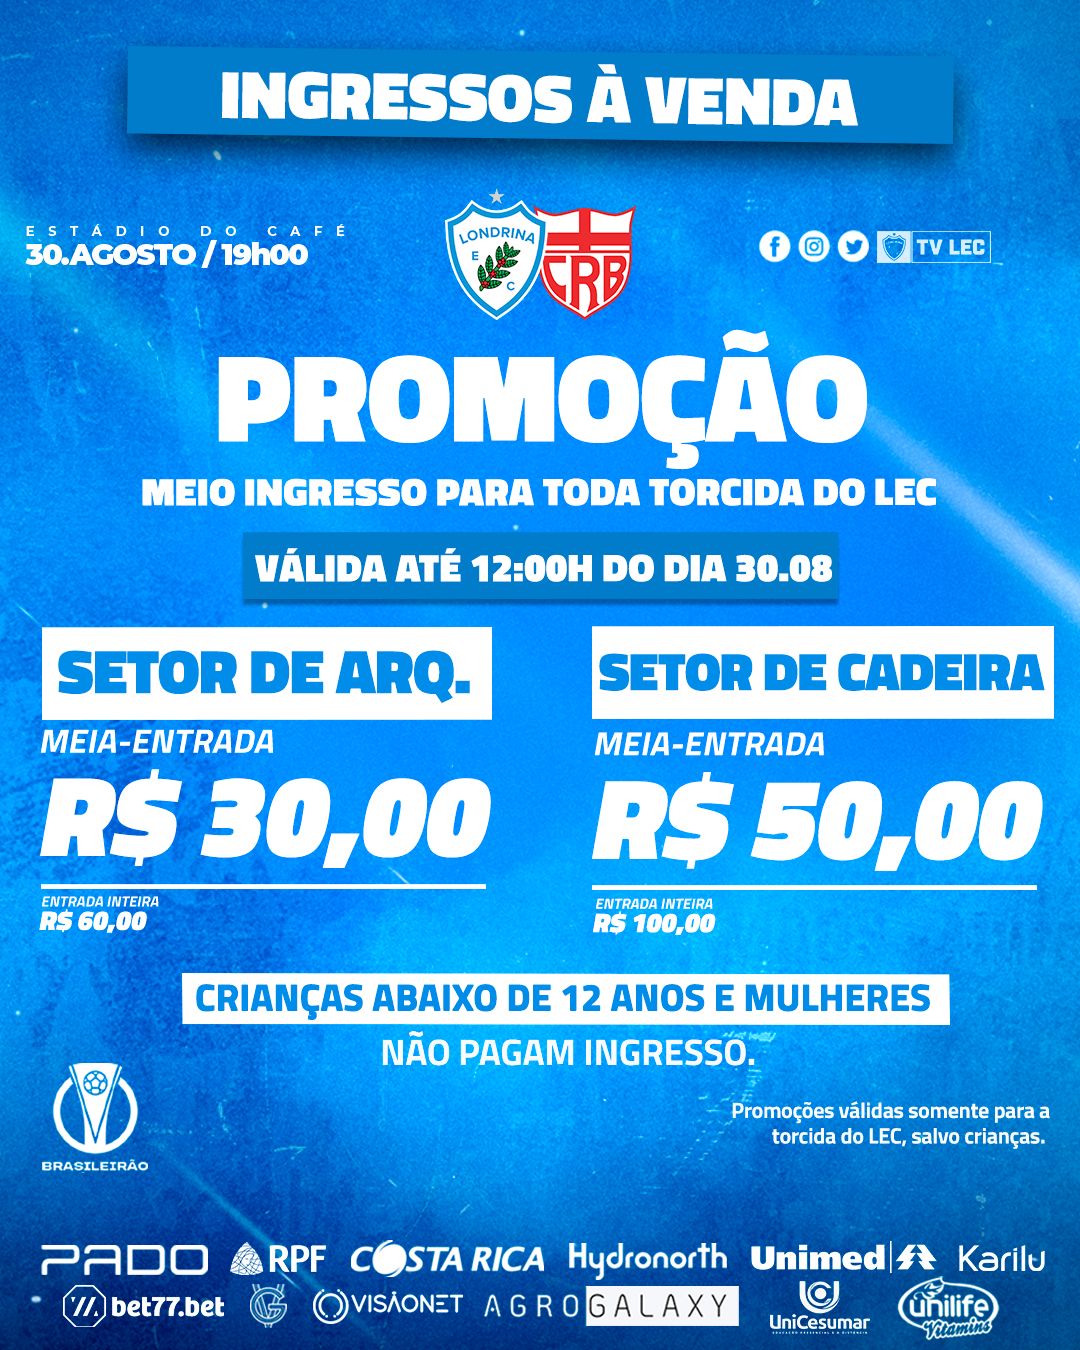 Ingressos à venda para Londrina Esporte Clube x CRB